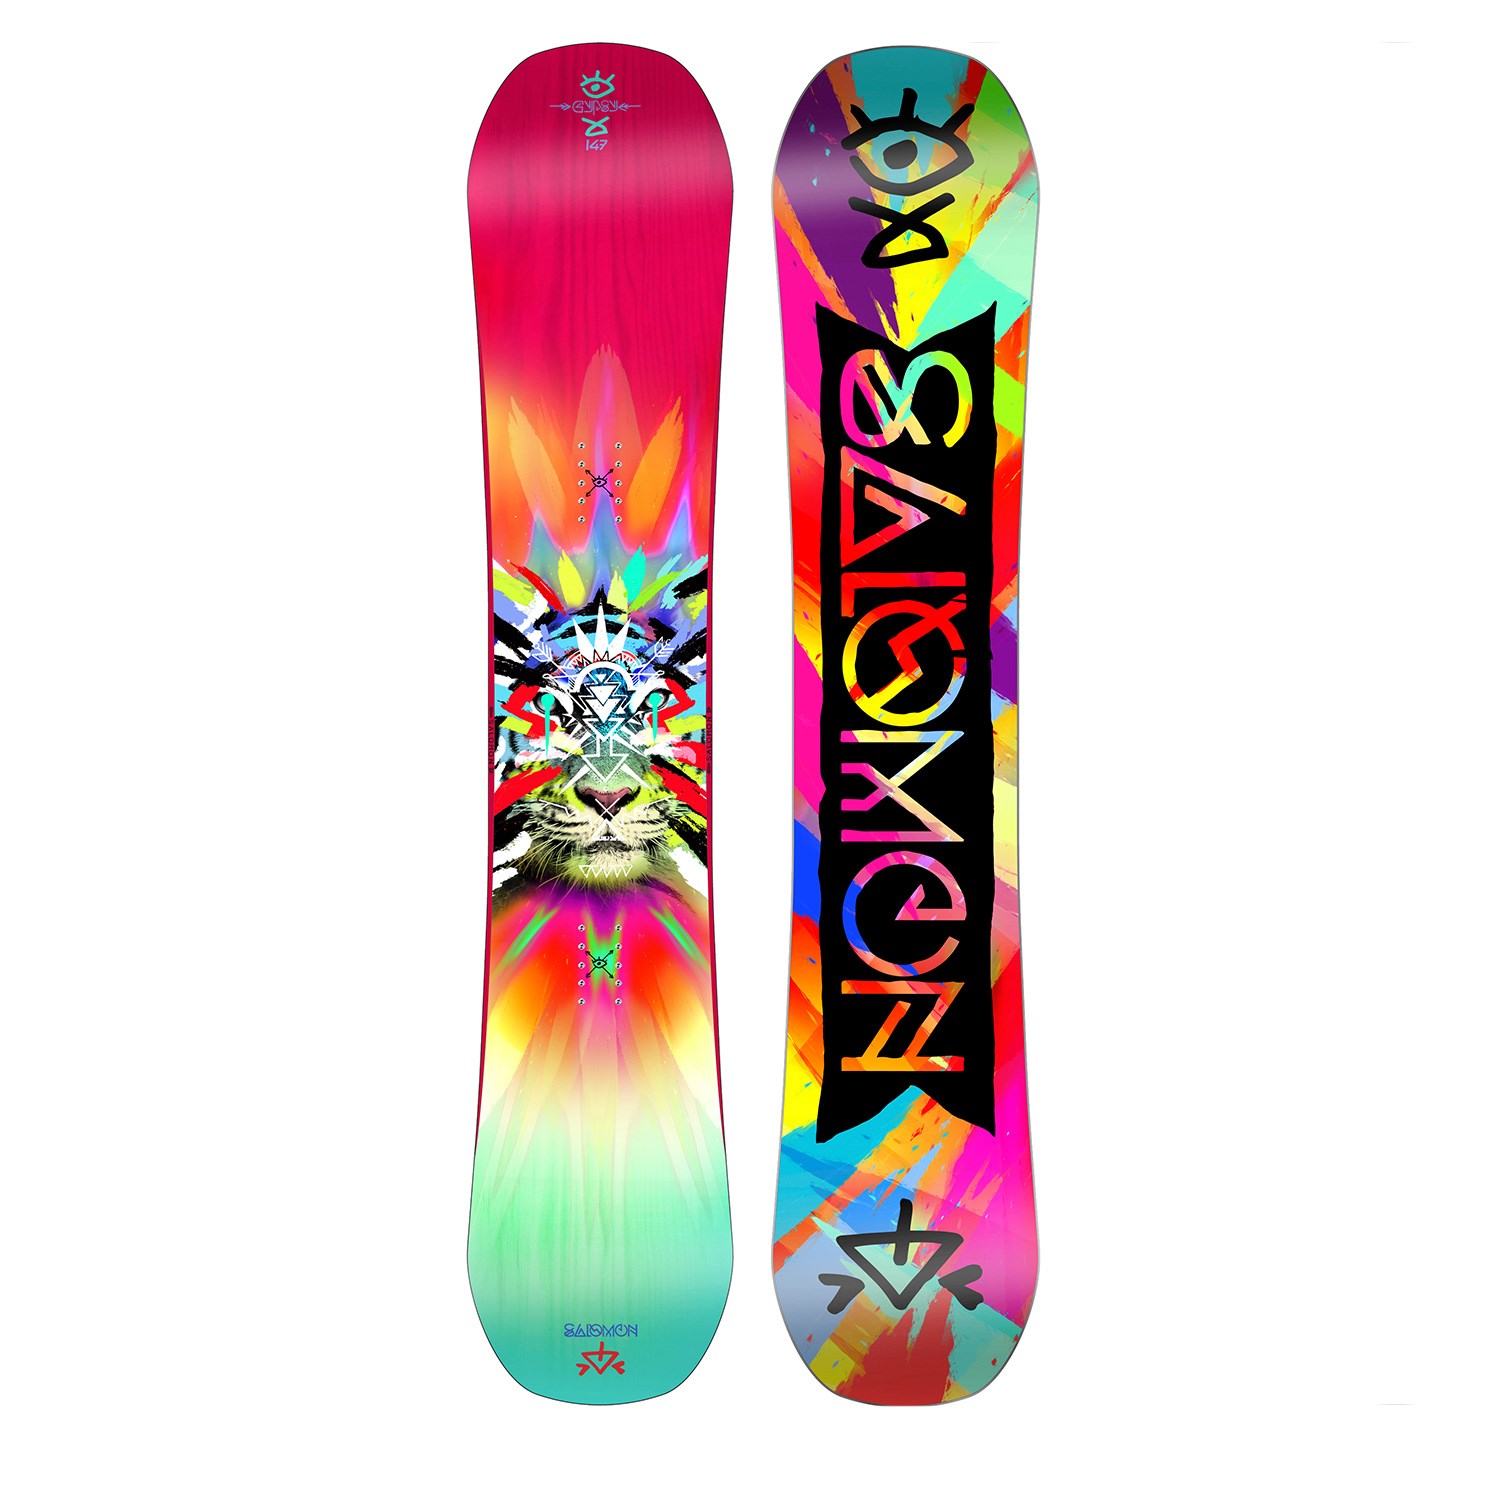 Gypsy 2016. The Best Women's Snowboard Designs - SnowSista